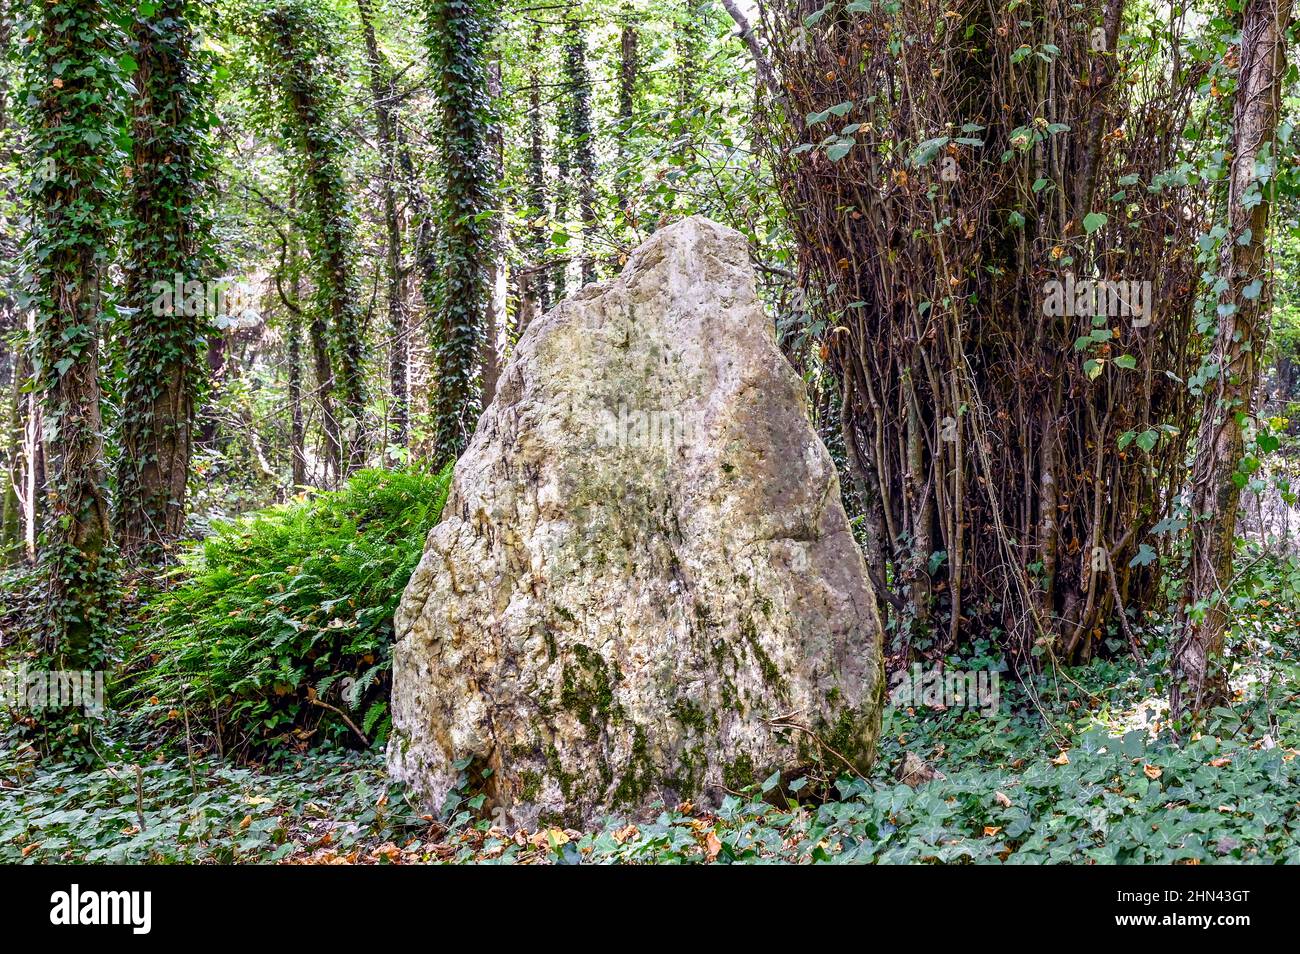 Il Brèche au Diable (taglio del Diavolo) è un taglio leggendario e popolare passeggiata, circondato dalla natura lussureggiante nel dipartimento francese di Calvados. Foto Stock